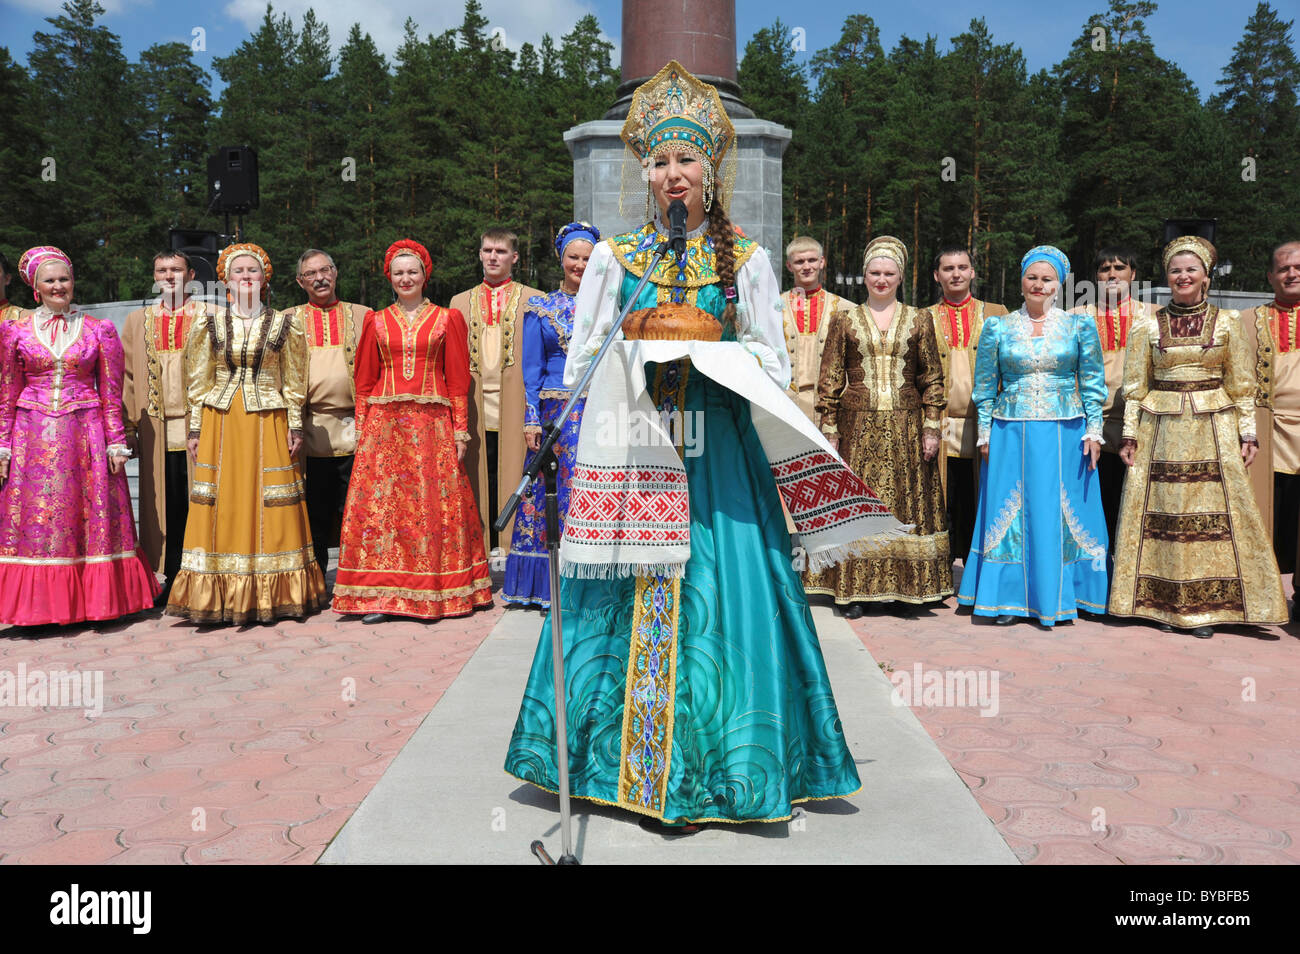 Obelisk markiert die Grenze zwischen Europa und Asien, eines russischen Tanzes Unternehmens Brot als ein Symbol der Gastfreundschaft Stockfoto